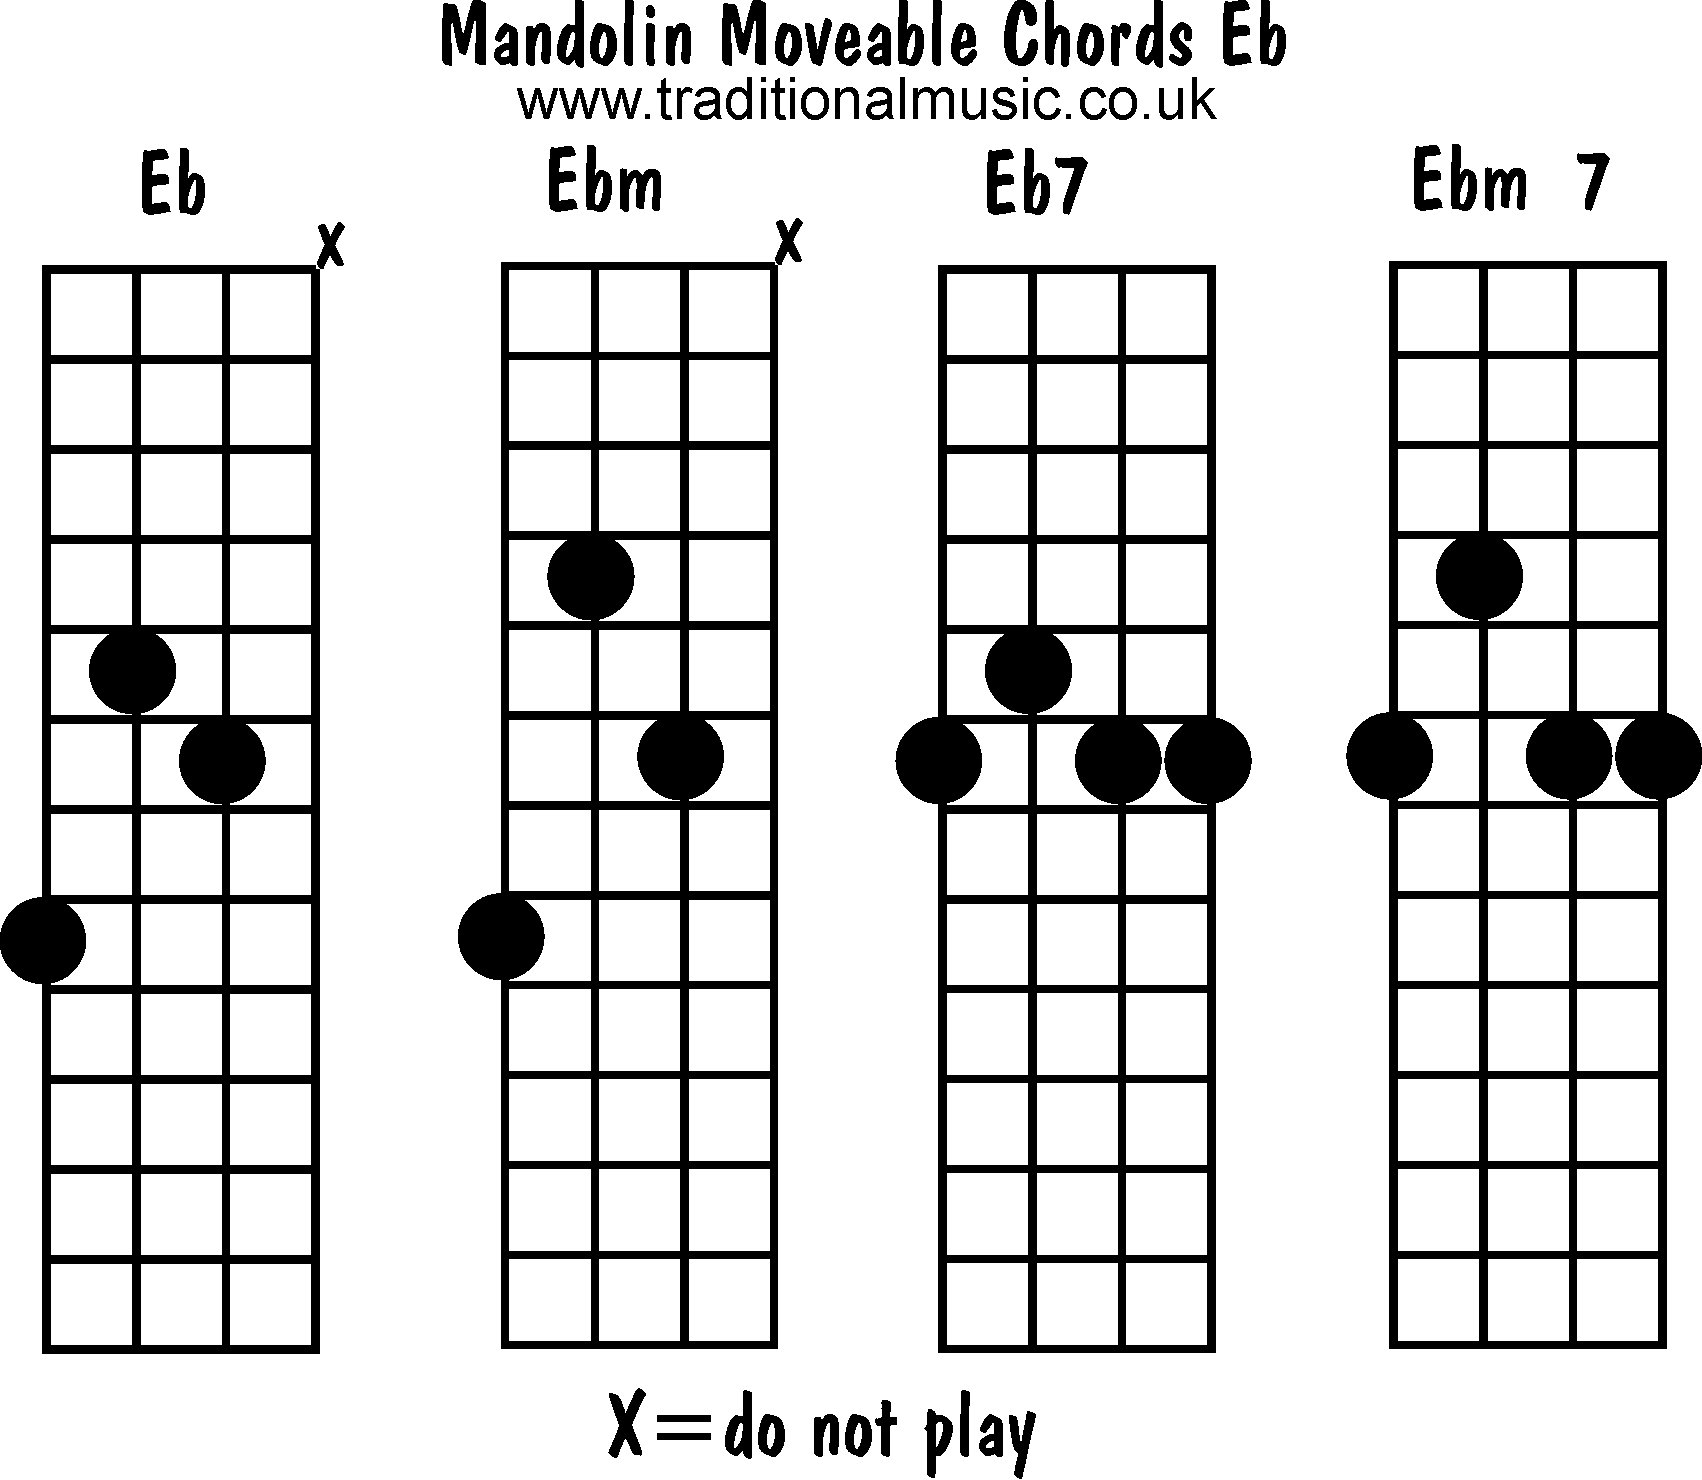 Chords: Eb, Ebm, Eb7, Ebm7.